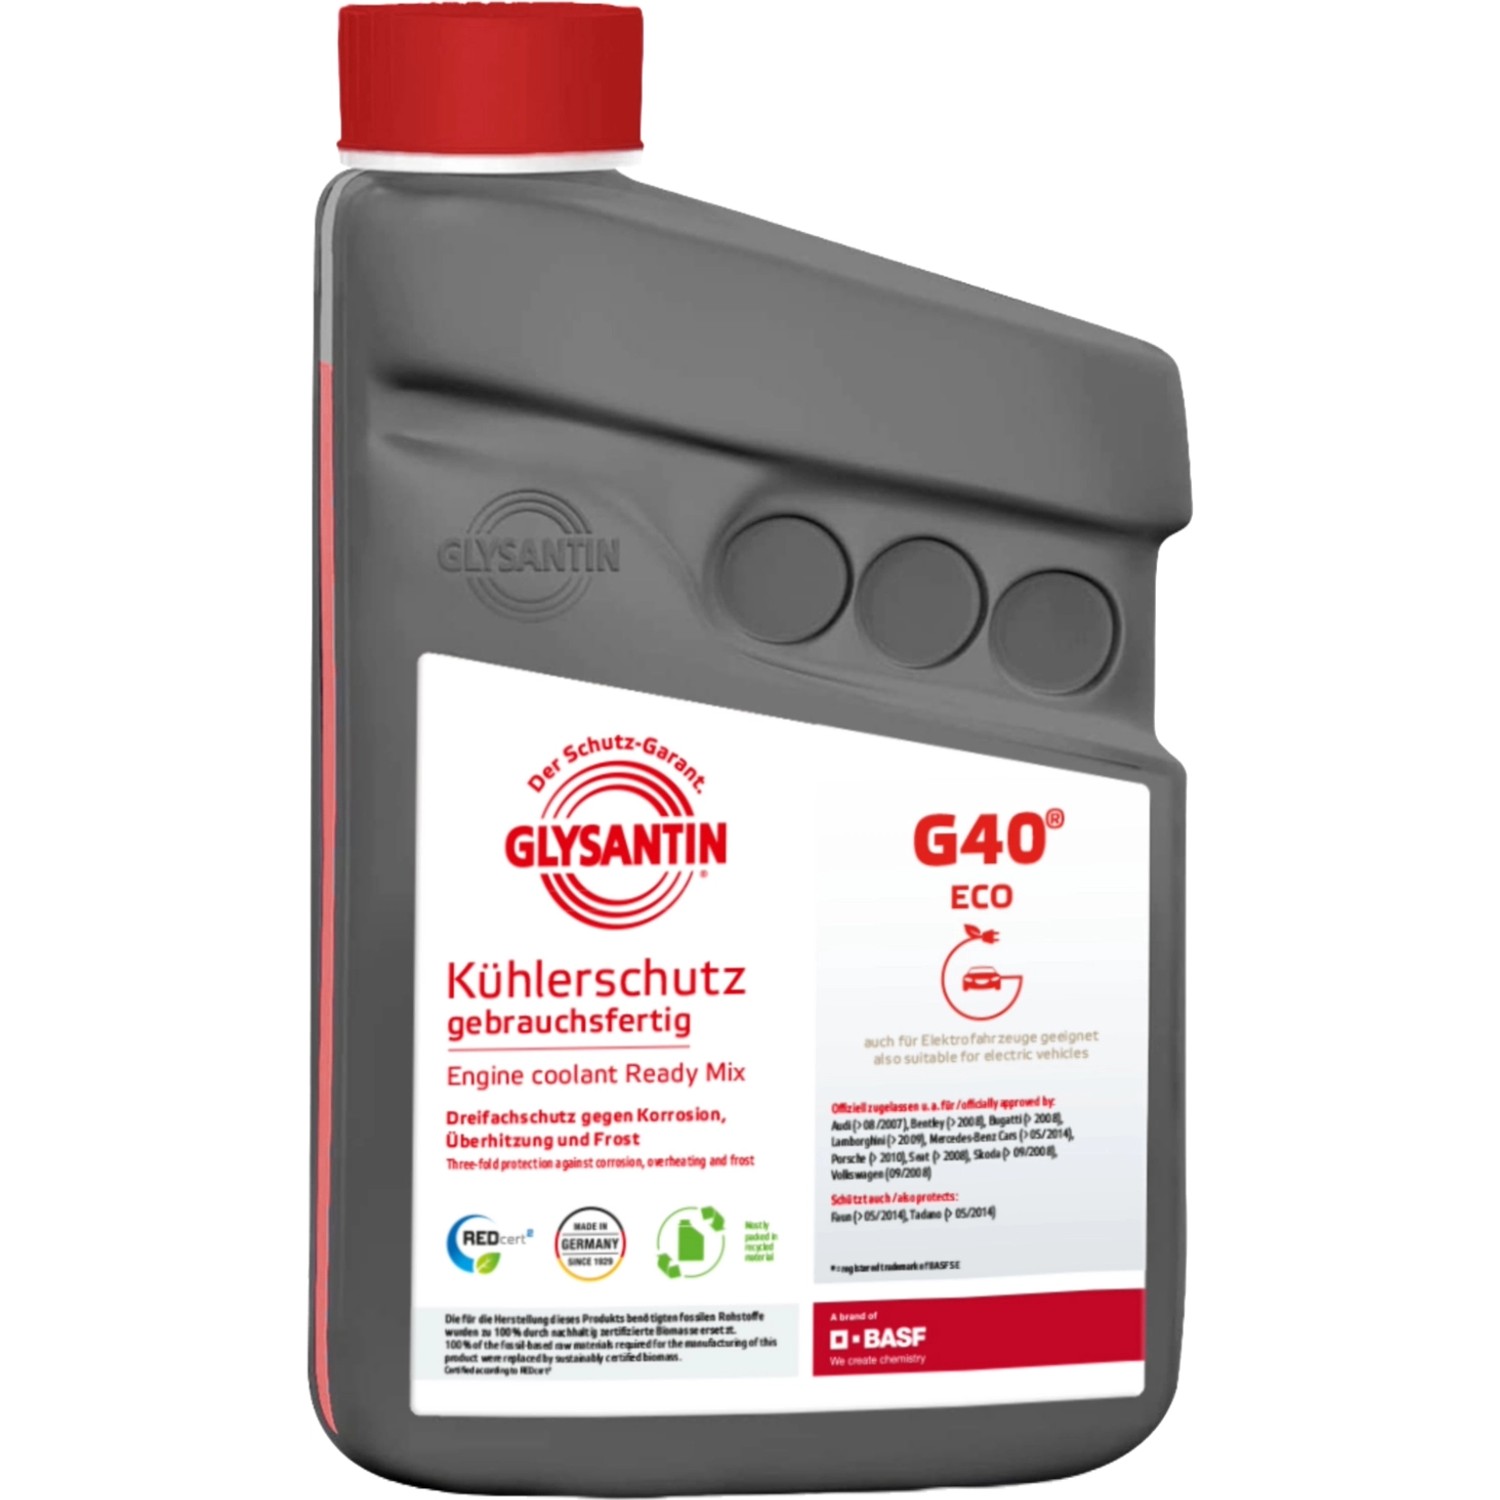 Glysantin Kühlerschutz Ready Mix G40 ECO BMB 100 1 Liter